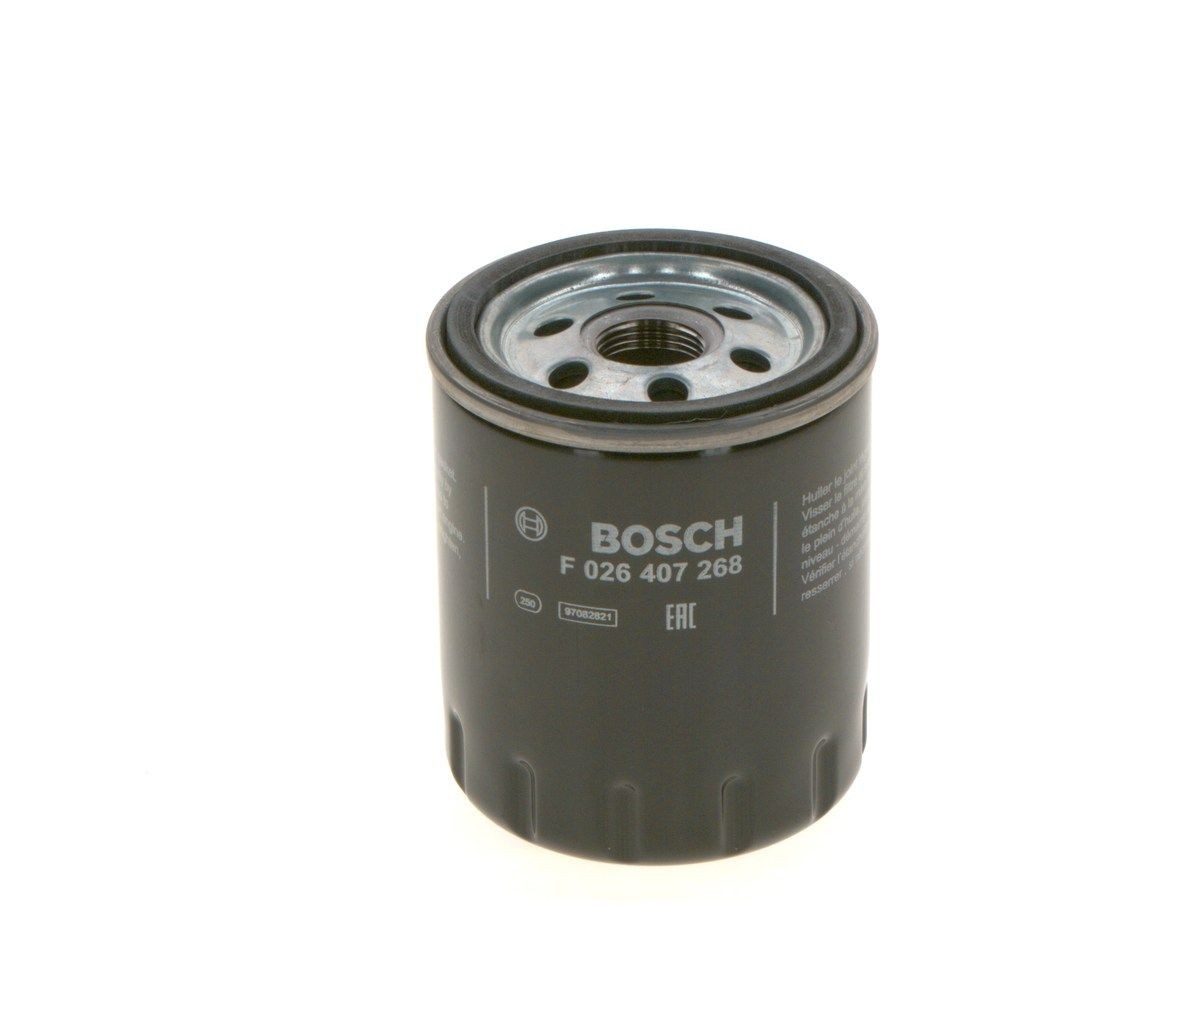 BOSCH Oil filter F 026 407 268